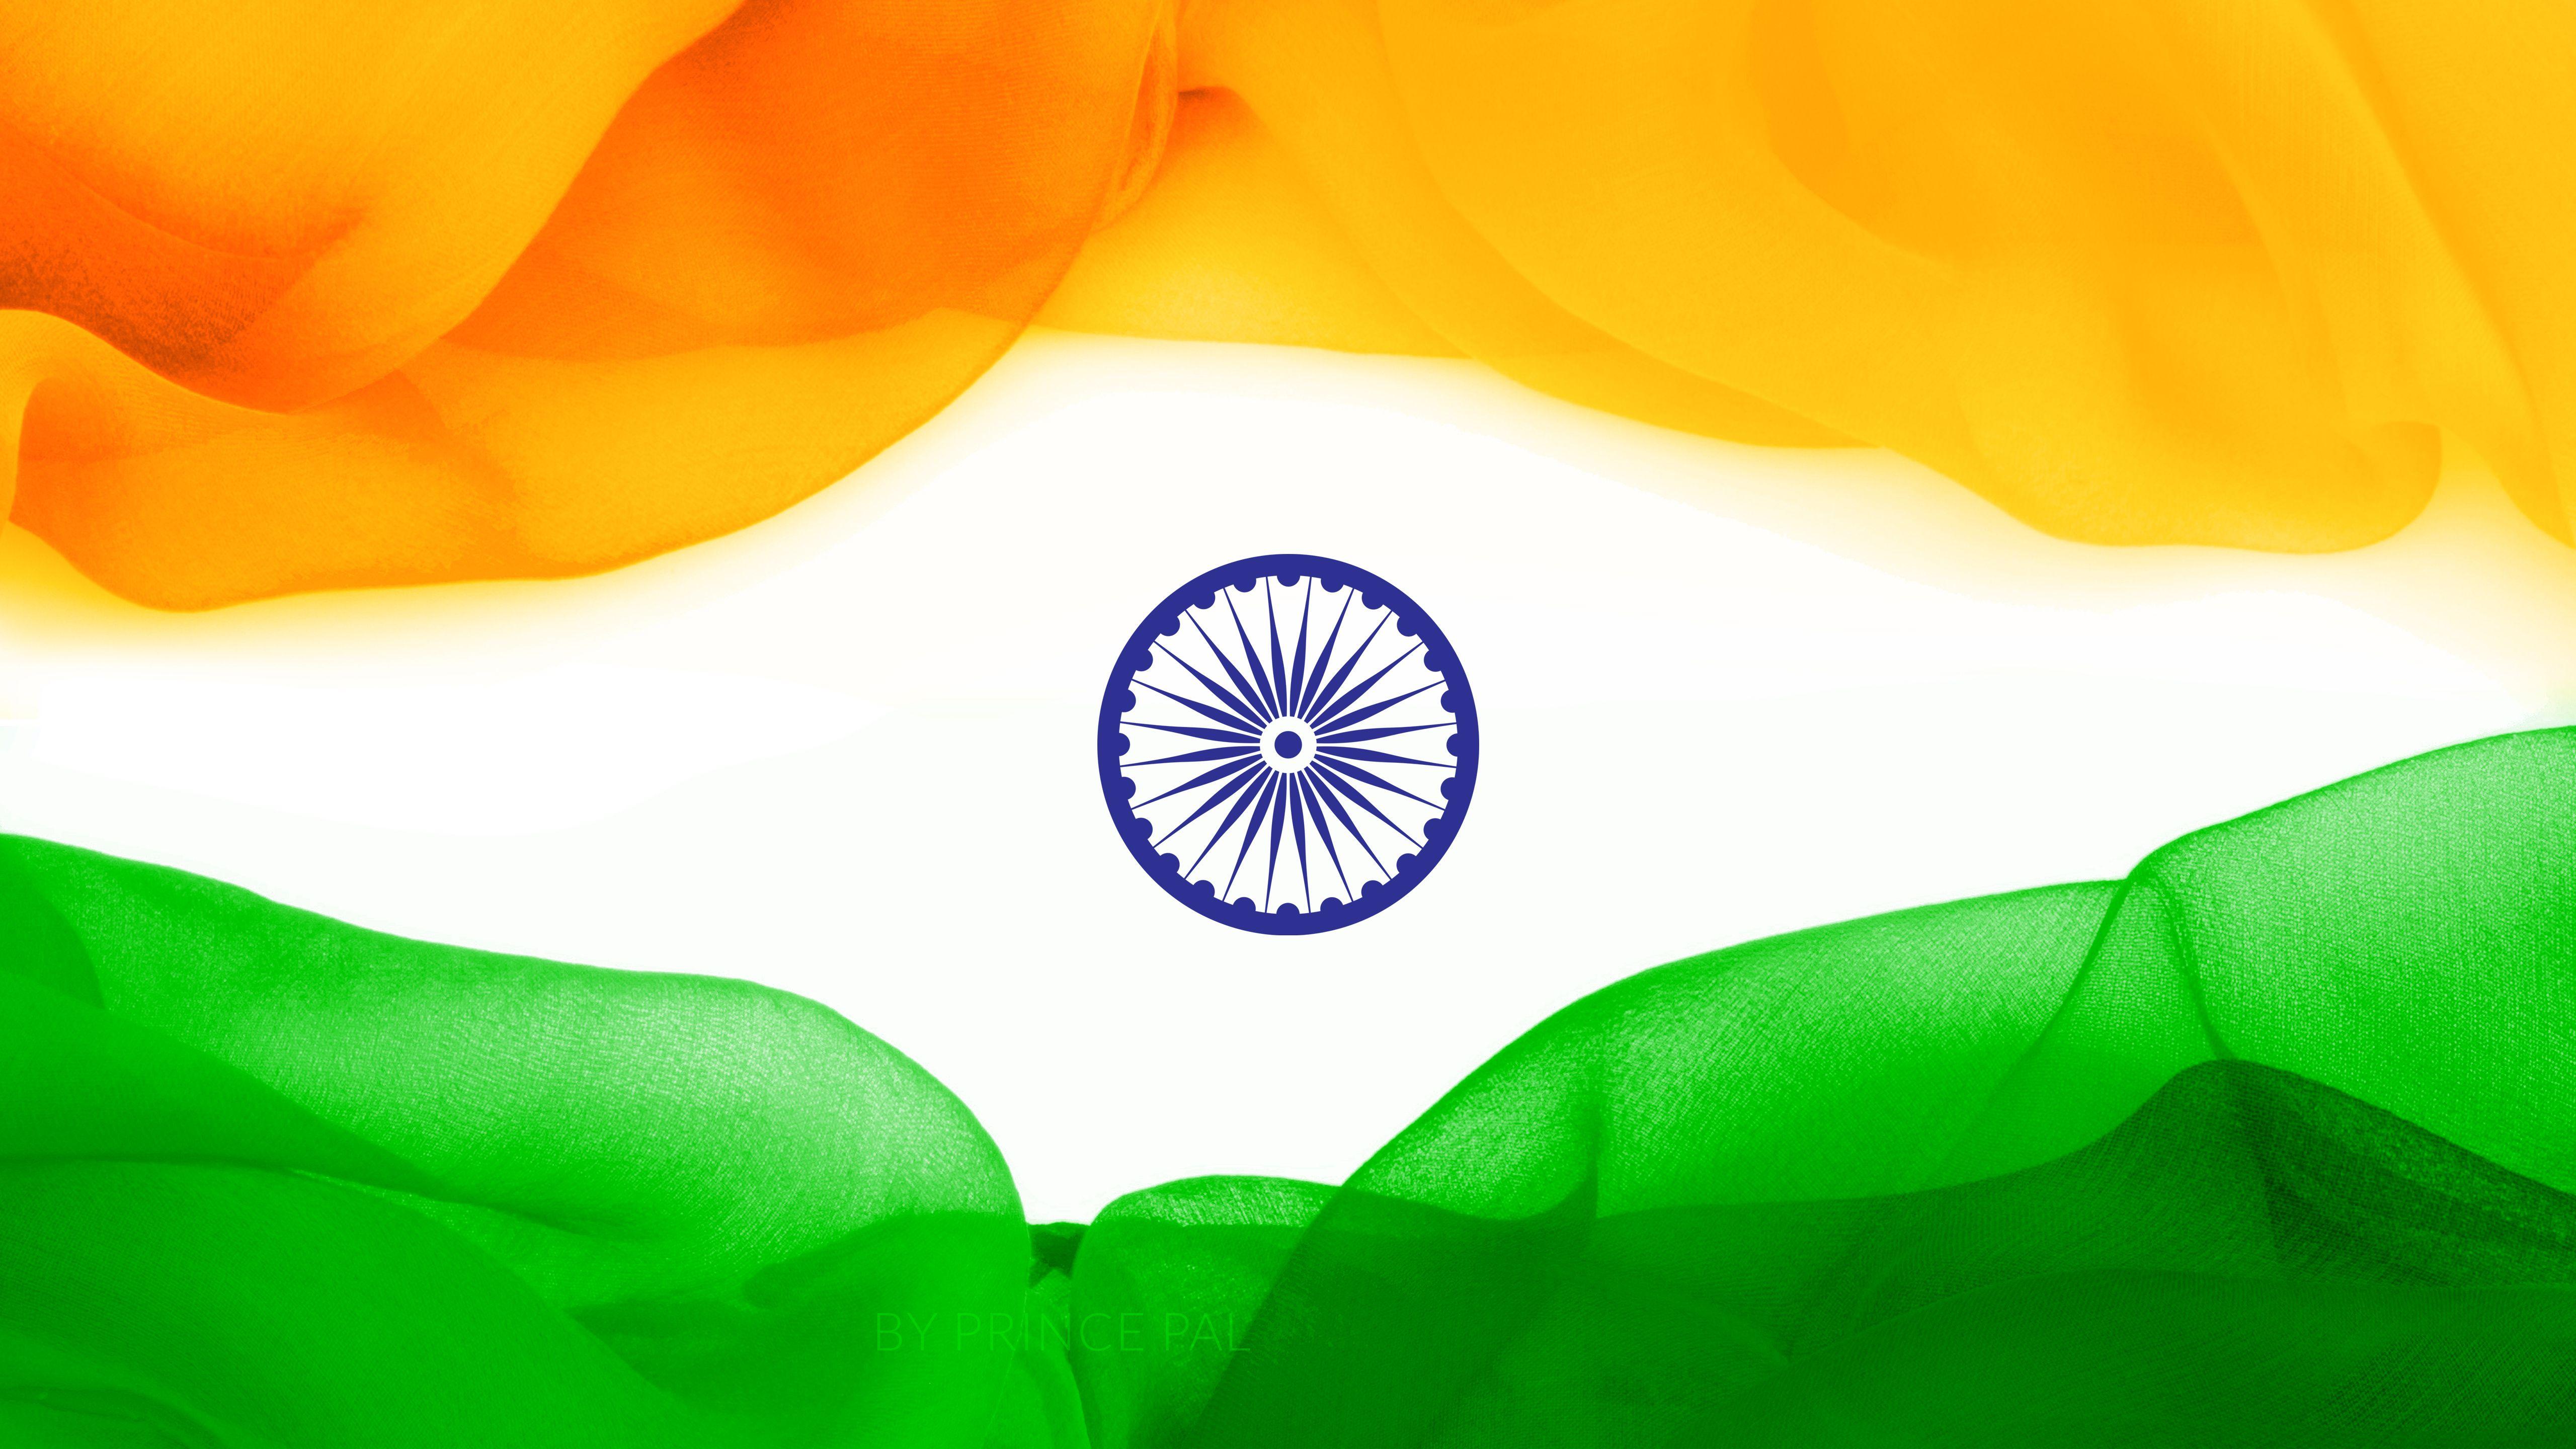 5120x2880 Hình nền cờ Ấn Độ - Chúc mừng ngày quốc khánh